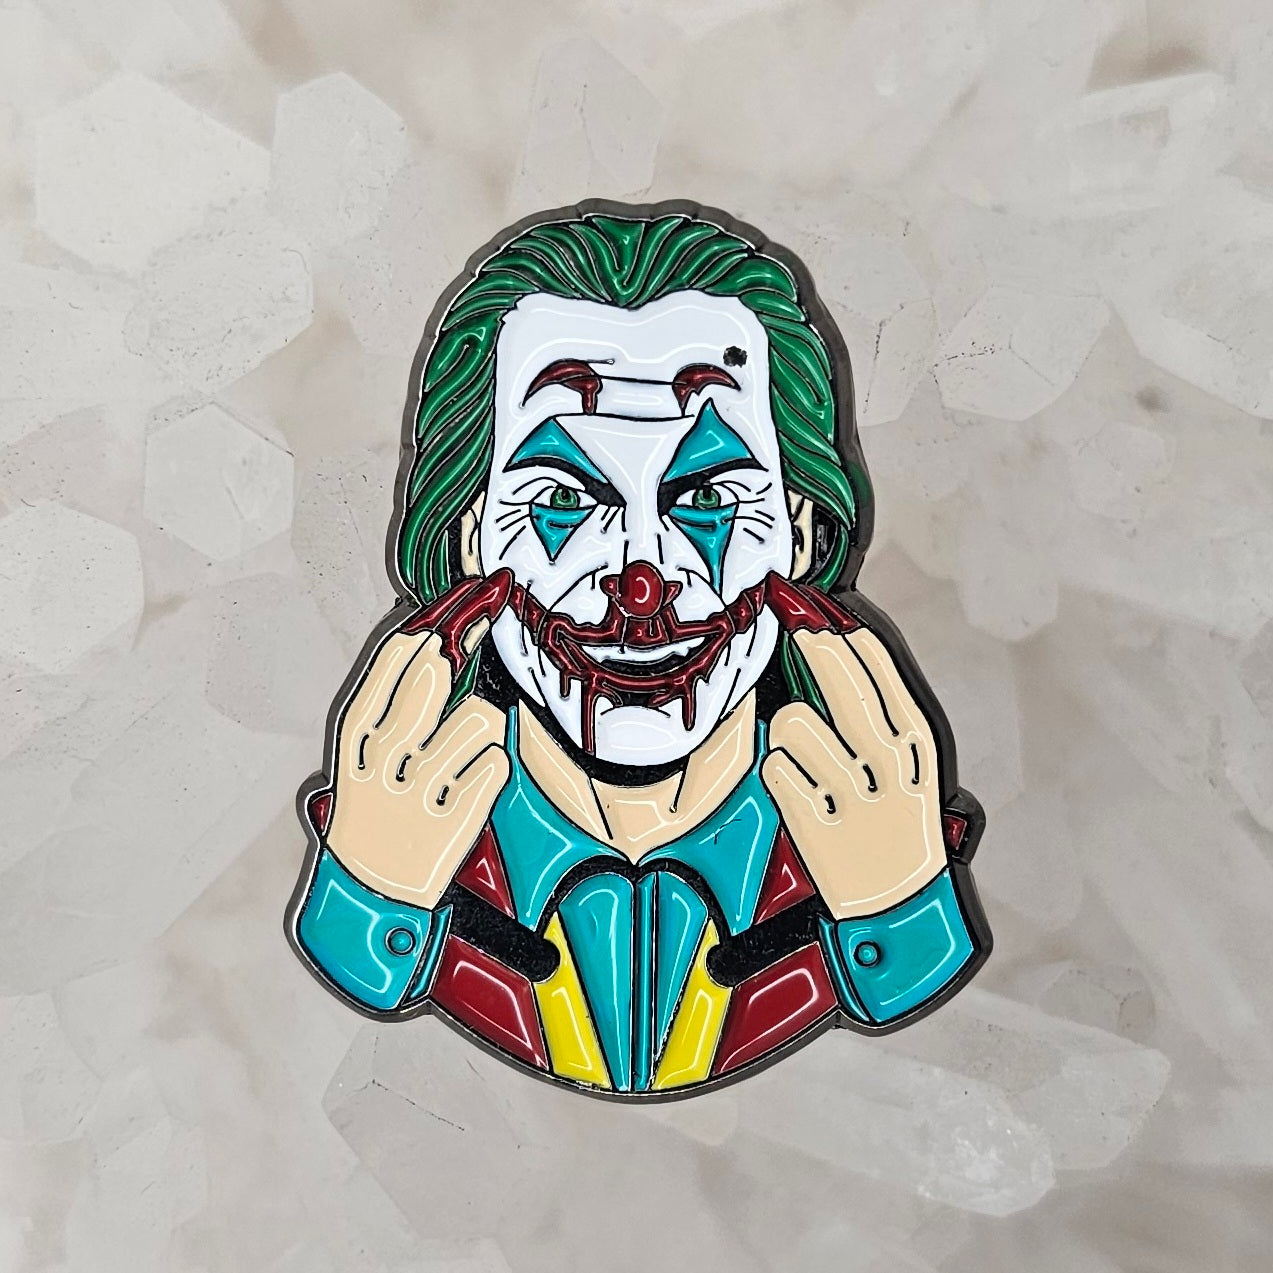 Freak Joker Clown Bat Man Comic Enamel Pins Hat Pins Lapel Pin Brooch Badge Festival Pin